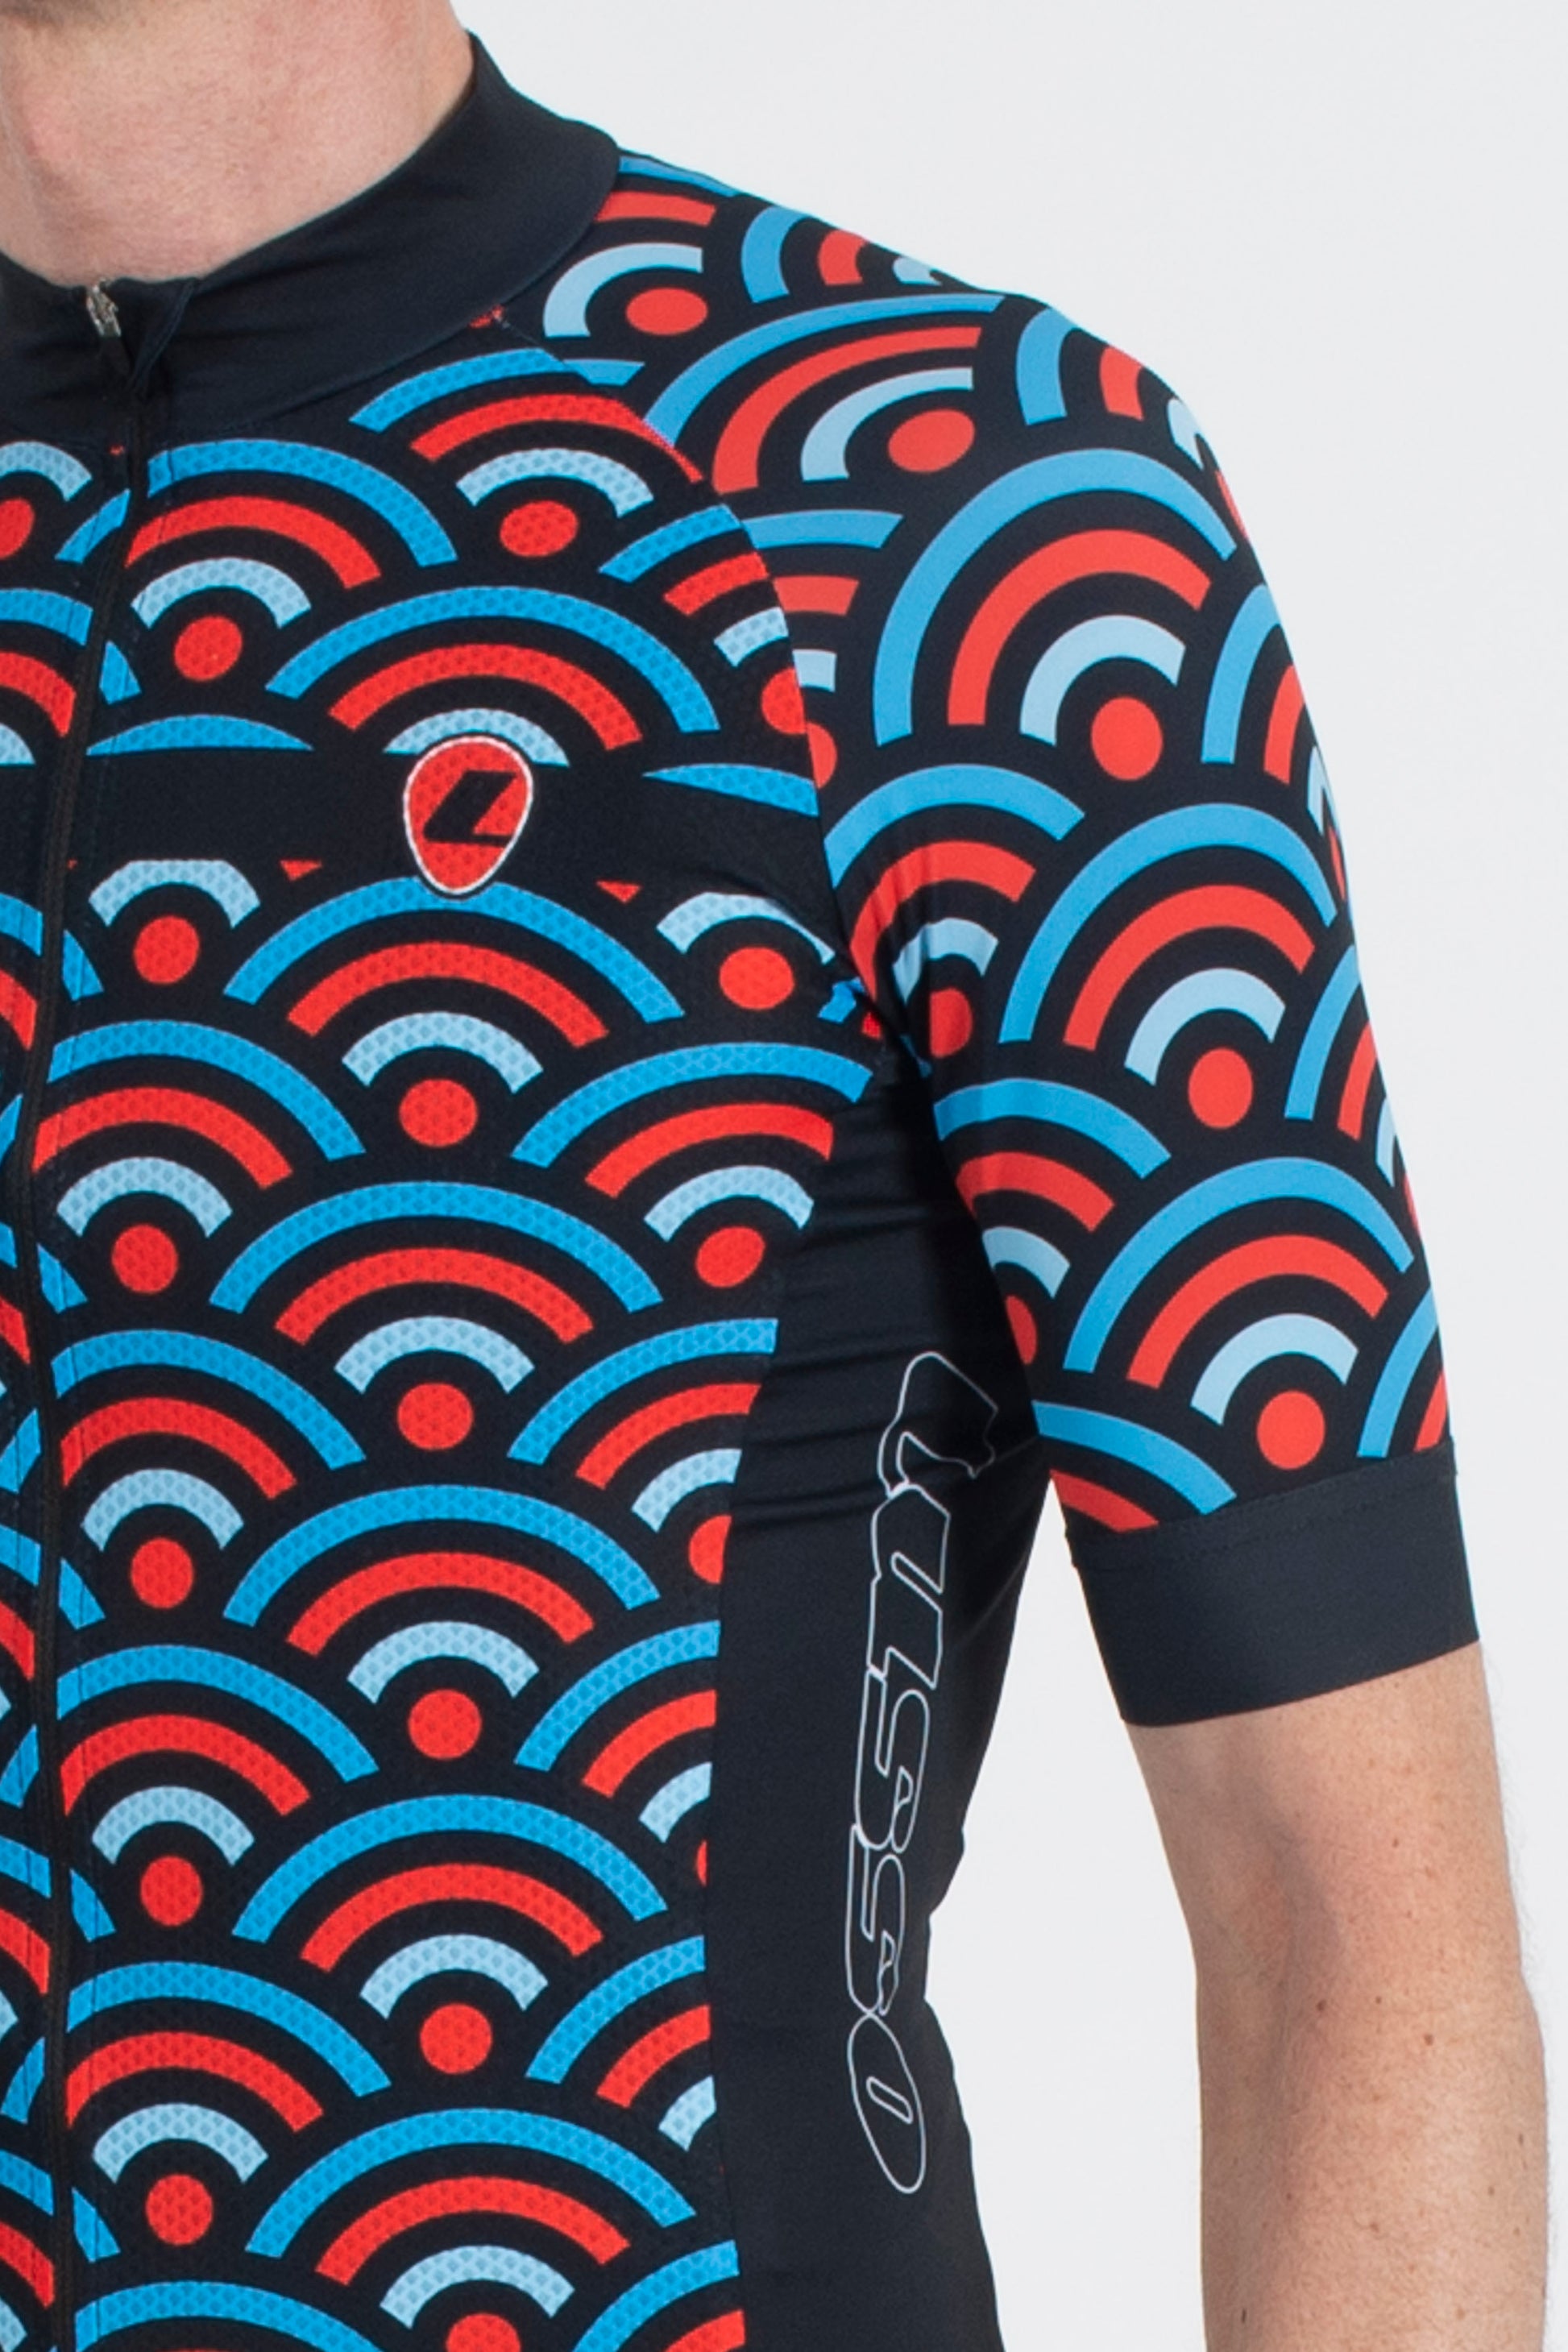 Hacienda Multi Short Sleeve Jersey - Lusso Cycle Wear